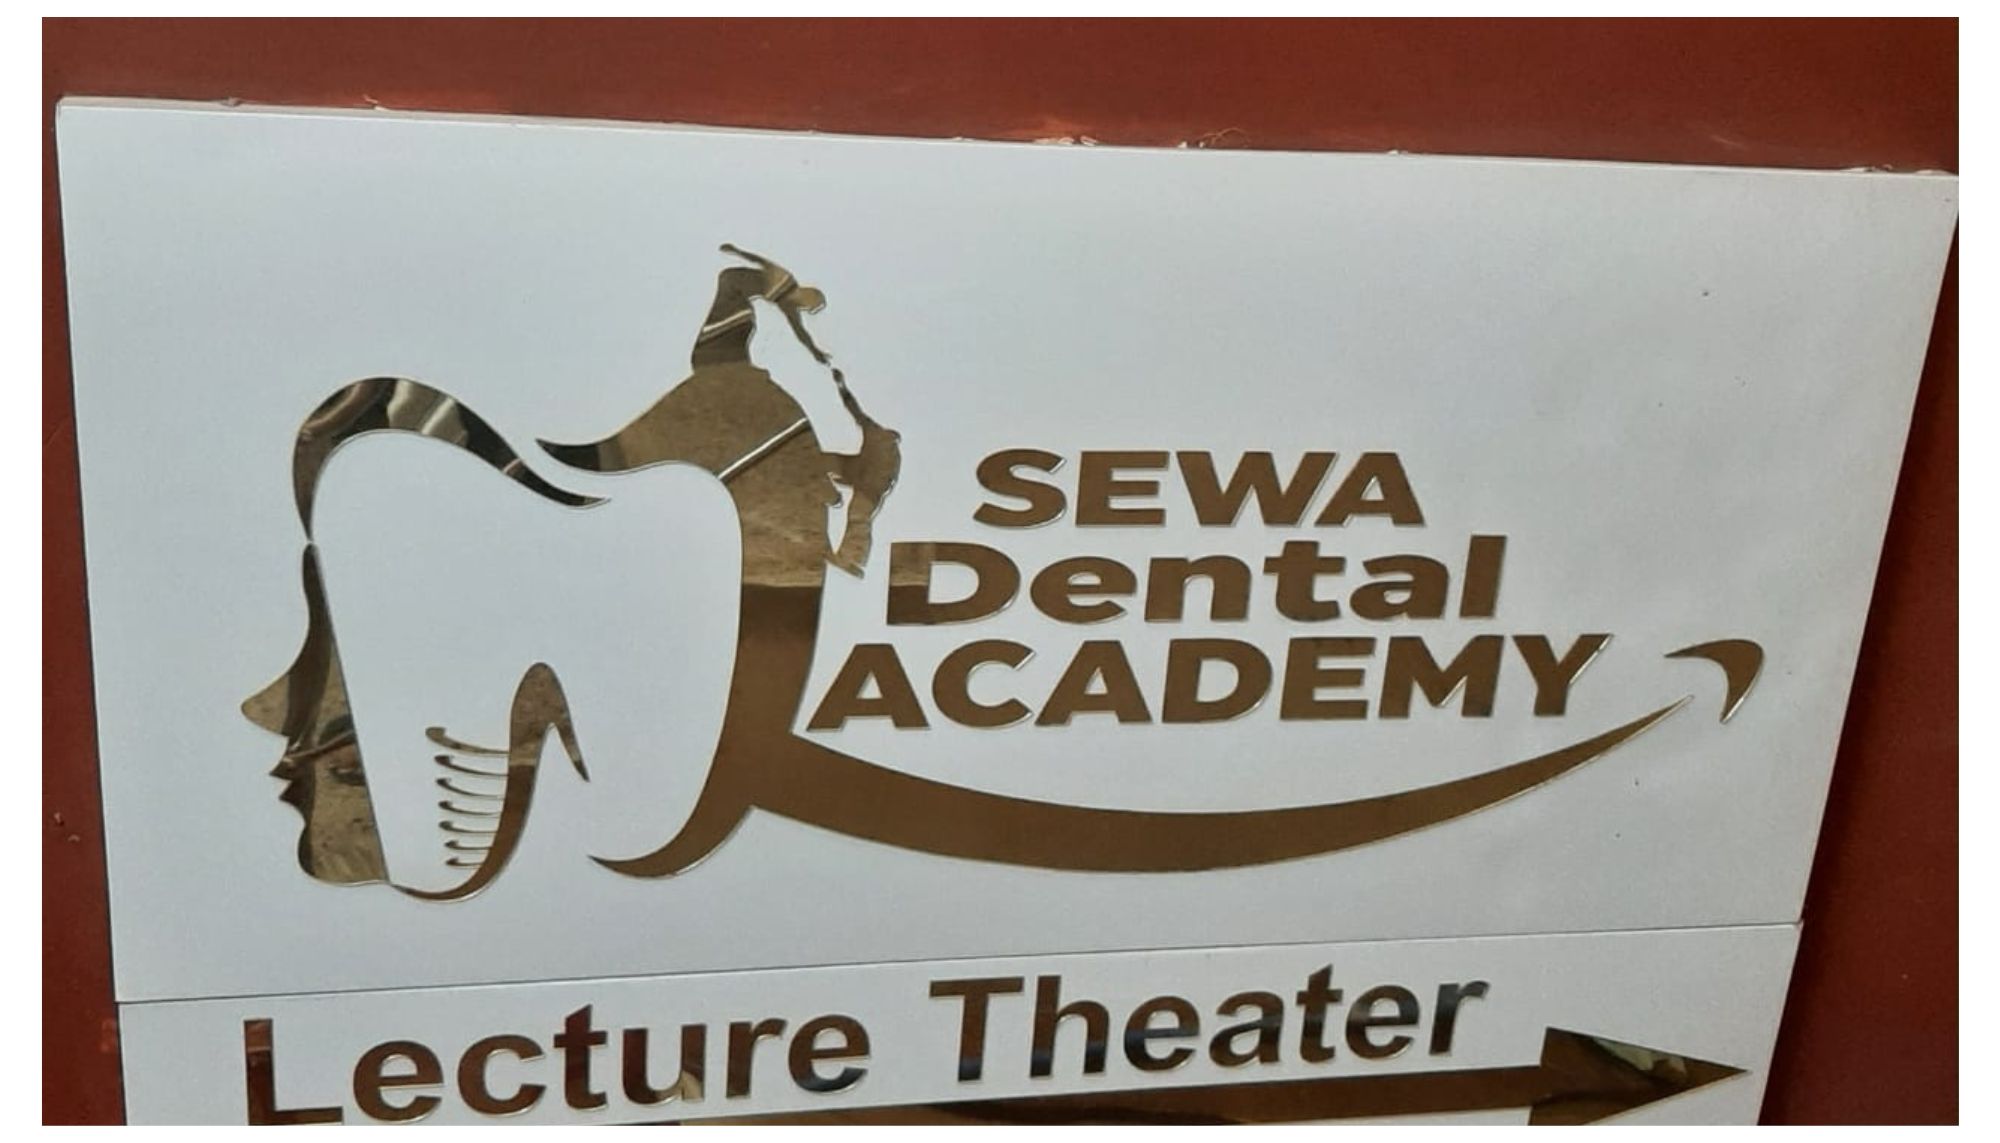 Our Happy Customer@ Sewa Dental Academy